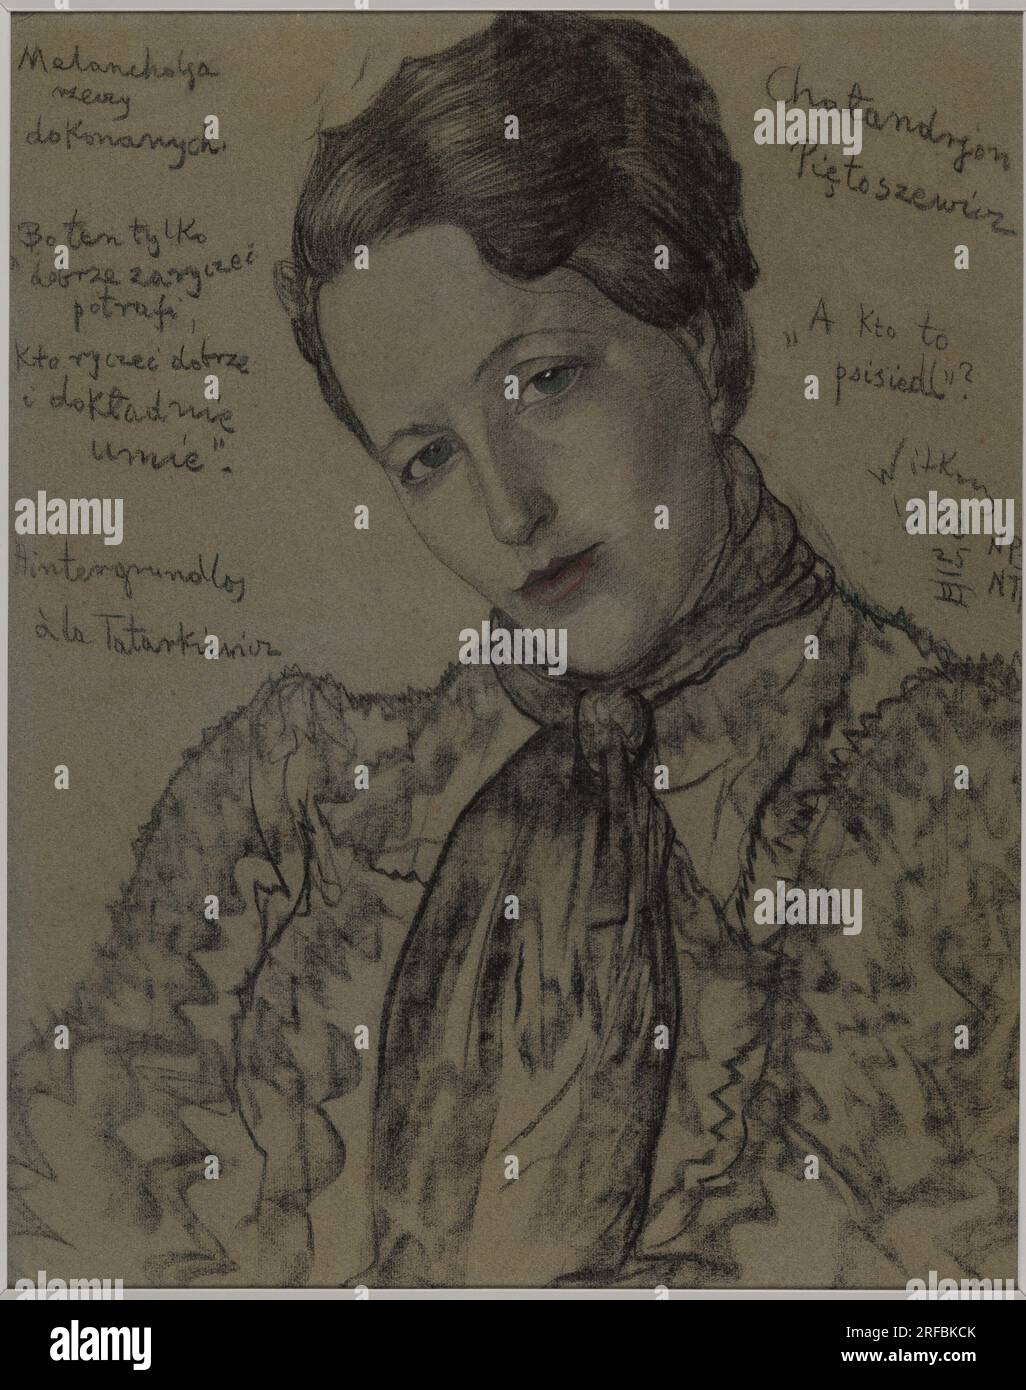 Asimmetrica Lady - Ritratto di Eugenia Wyszomirska-Kuźnicka - la malinconia delle cose compiute 25 marzo 1938 di Stanisław Ignacy Witkiewicz Foto Stock